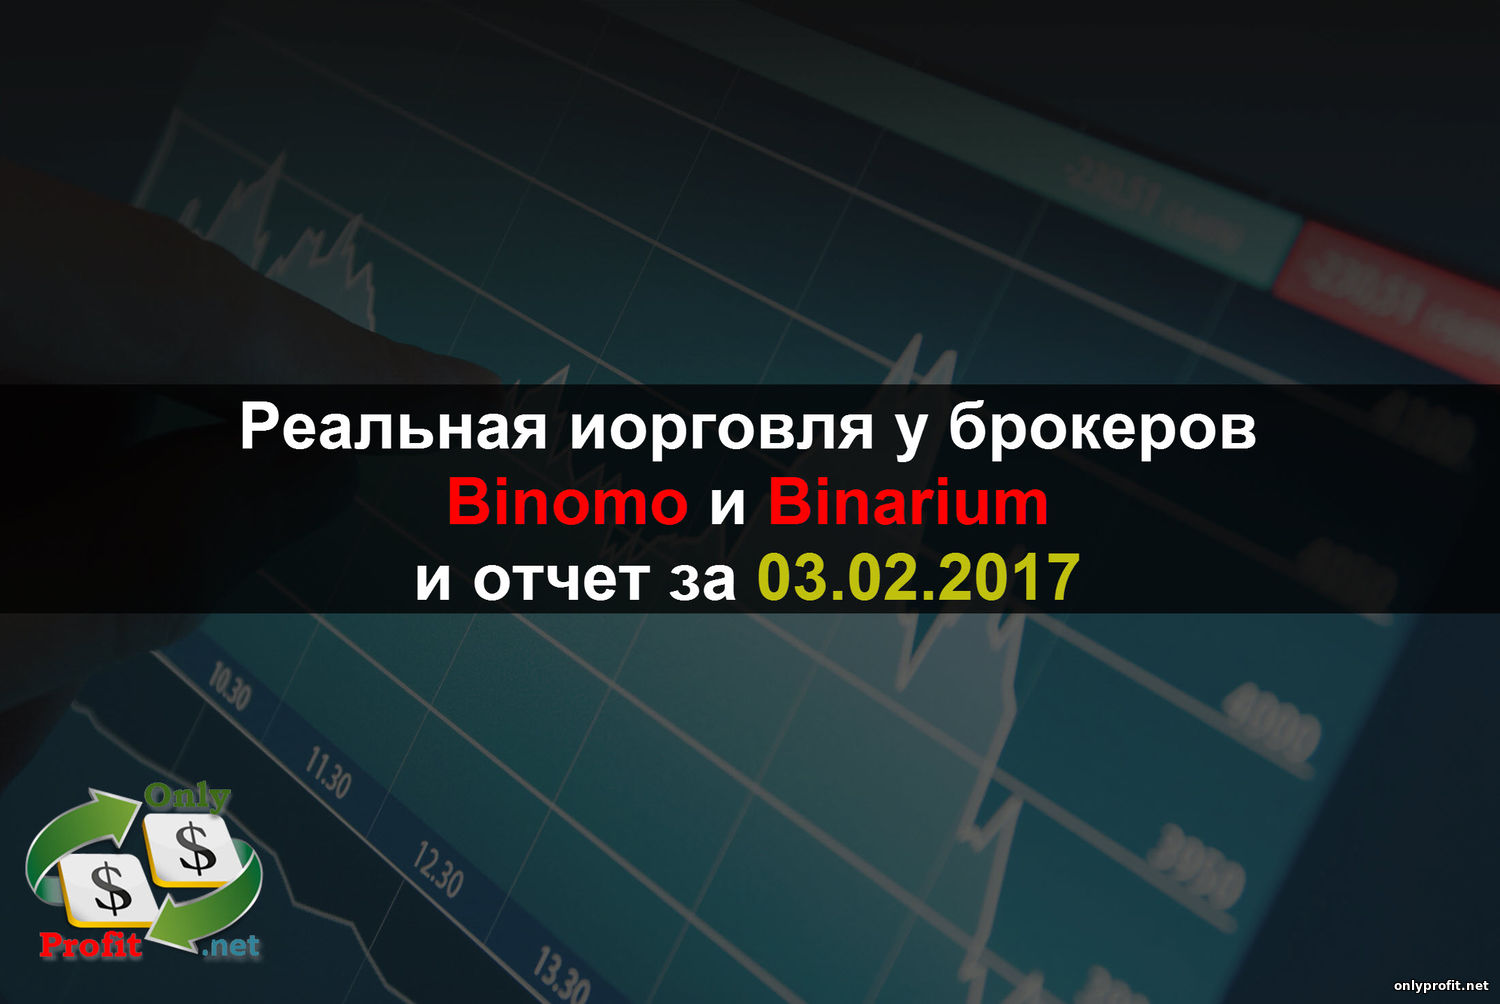 Реальная торговля у брокеров Binomo и Binarium и отчет за 03.02.2017